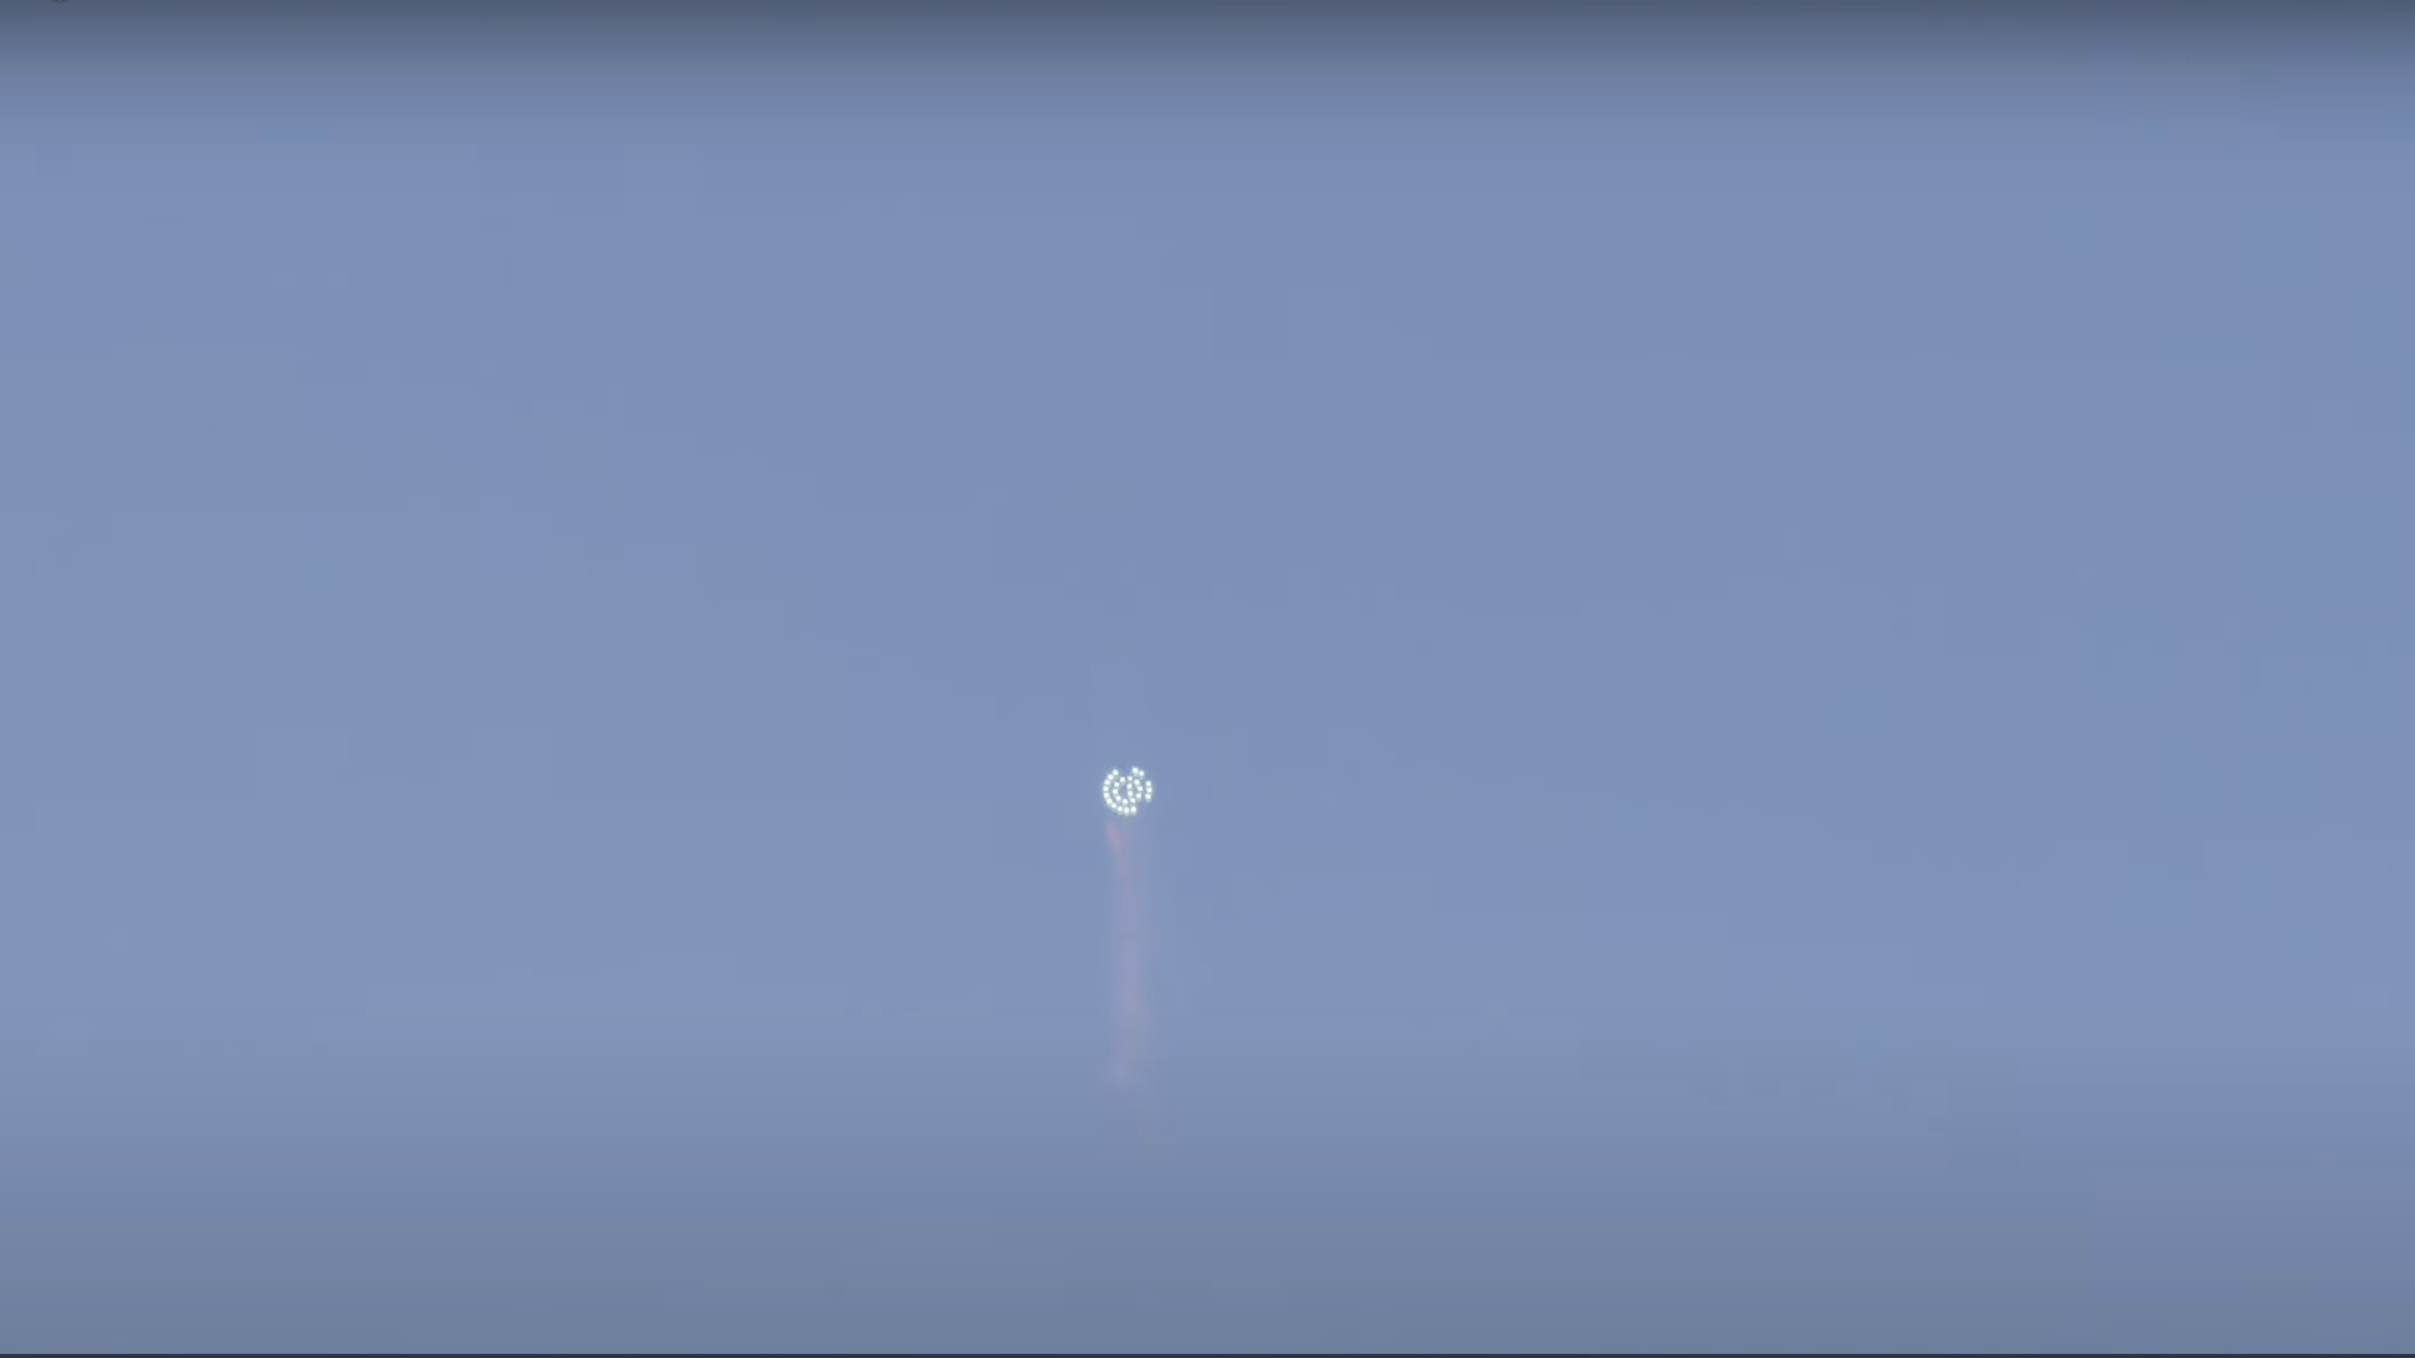 Ground View des Starship von SpaceX während des Orbital Test Flights, Screenshot;
© SpaceX